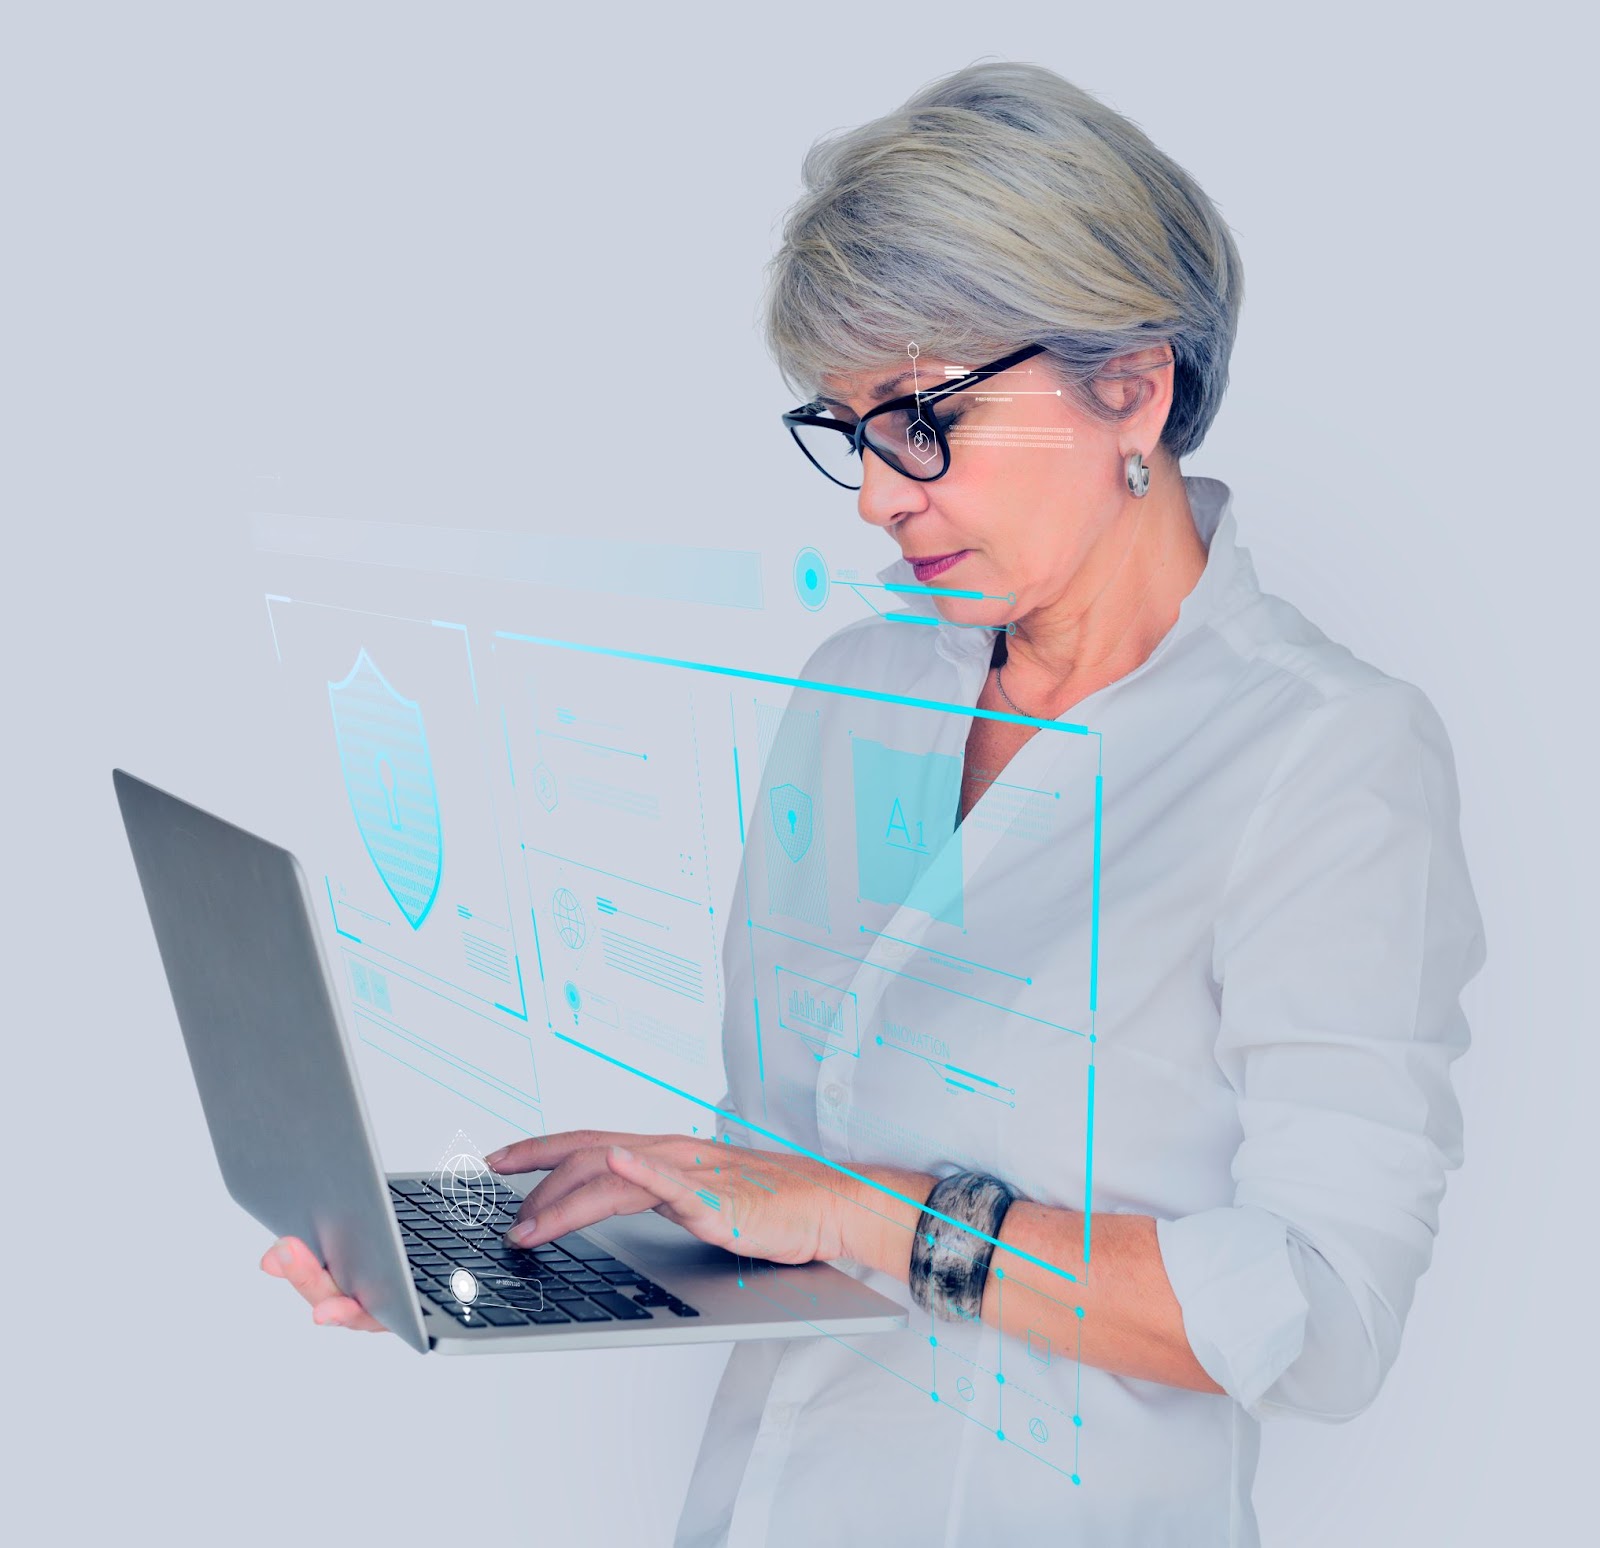 Foto de uma mulher adulta, segurando um notebook. A imagem conta com uma composição criada digitalmente, na qual identificamos uma fechadura, ilustrando a importância da segurança cibernética.